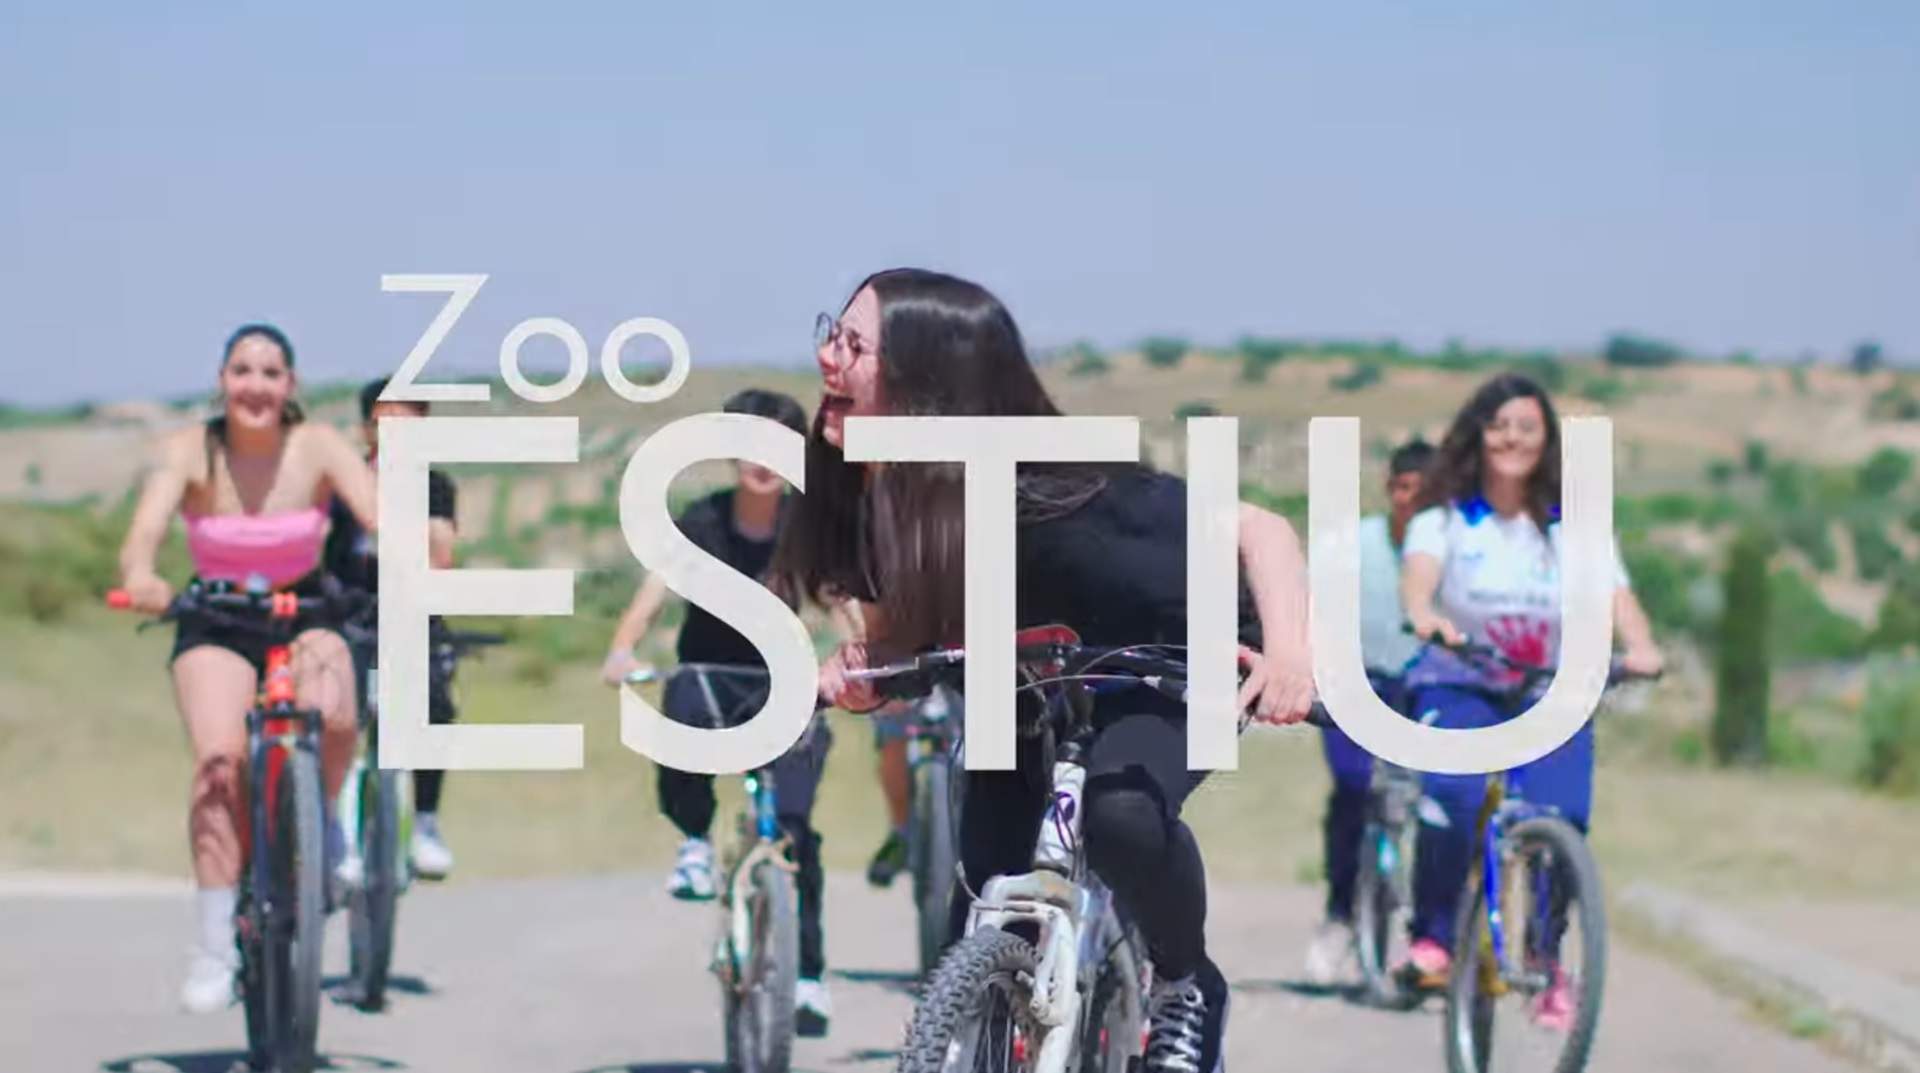 Un instituto de Albacete se hace viral: se atreve con el catalán con la canción 'Estiu' de Zoo